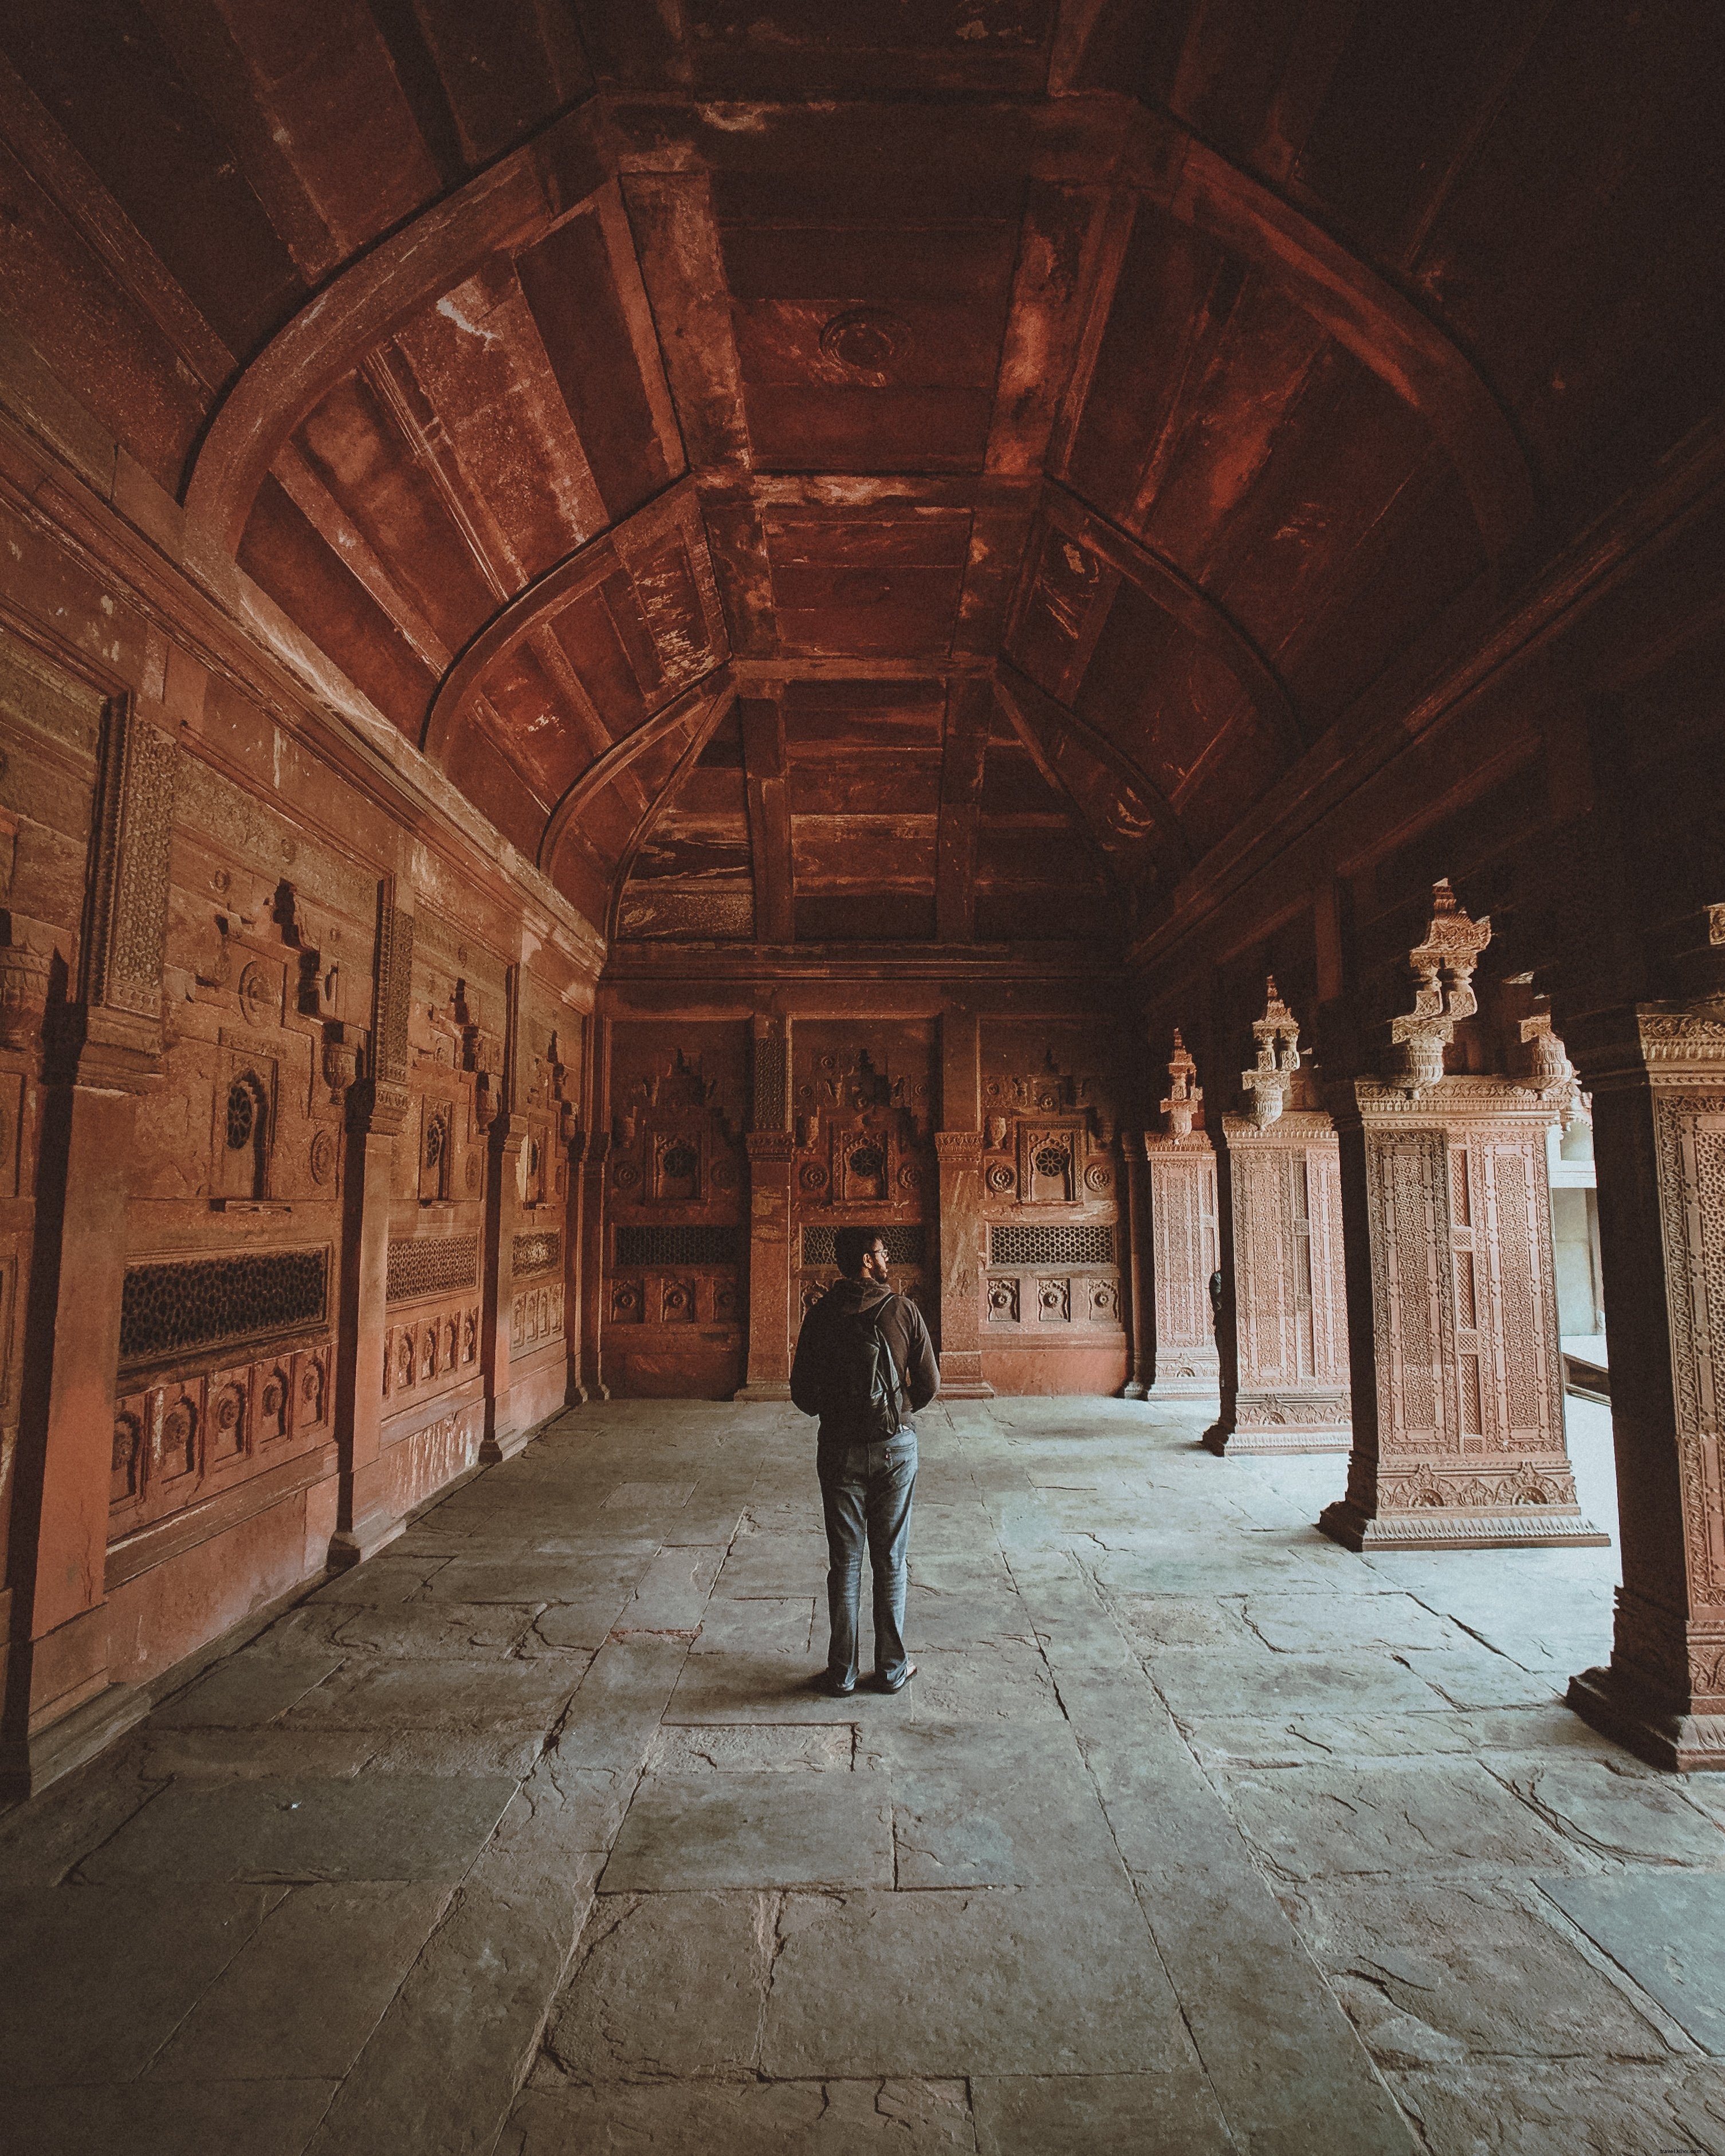 Turista in un monastero buddista che prende tutto in foto